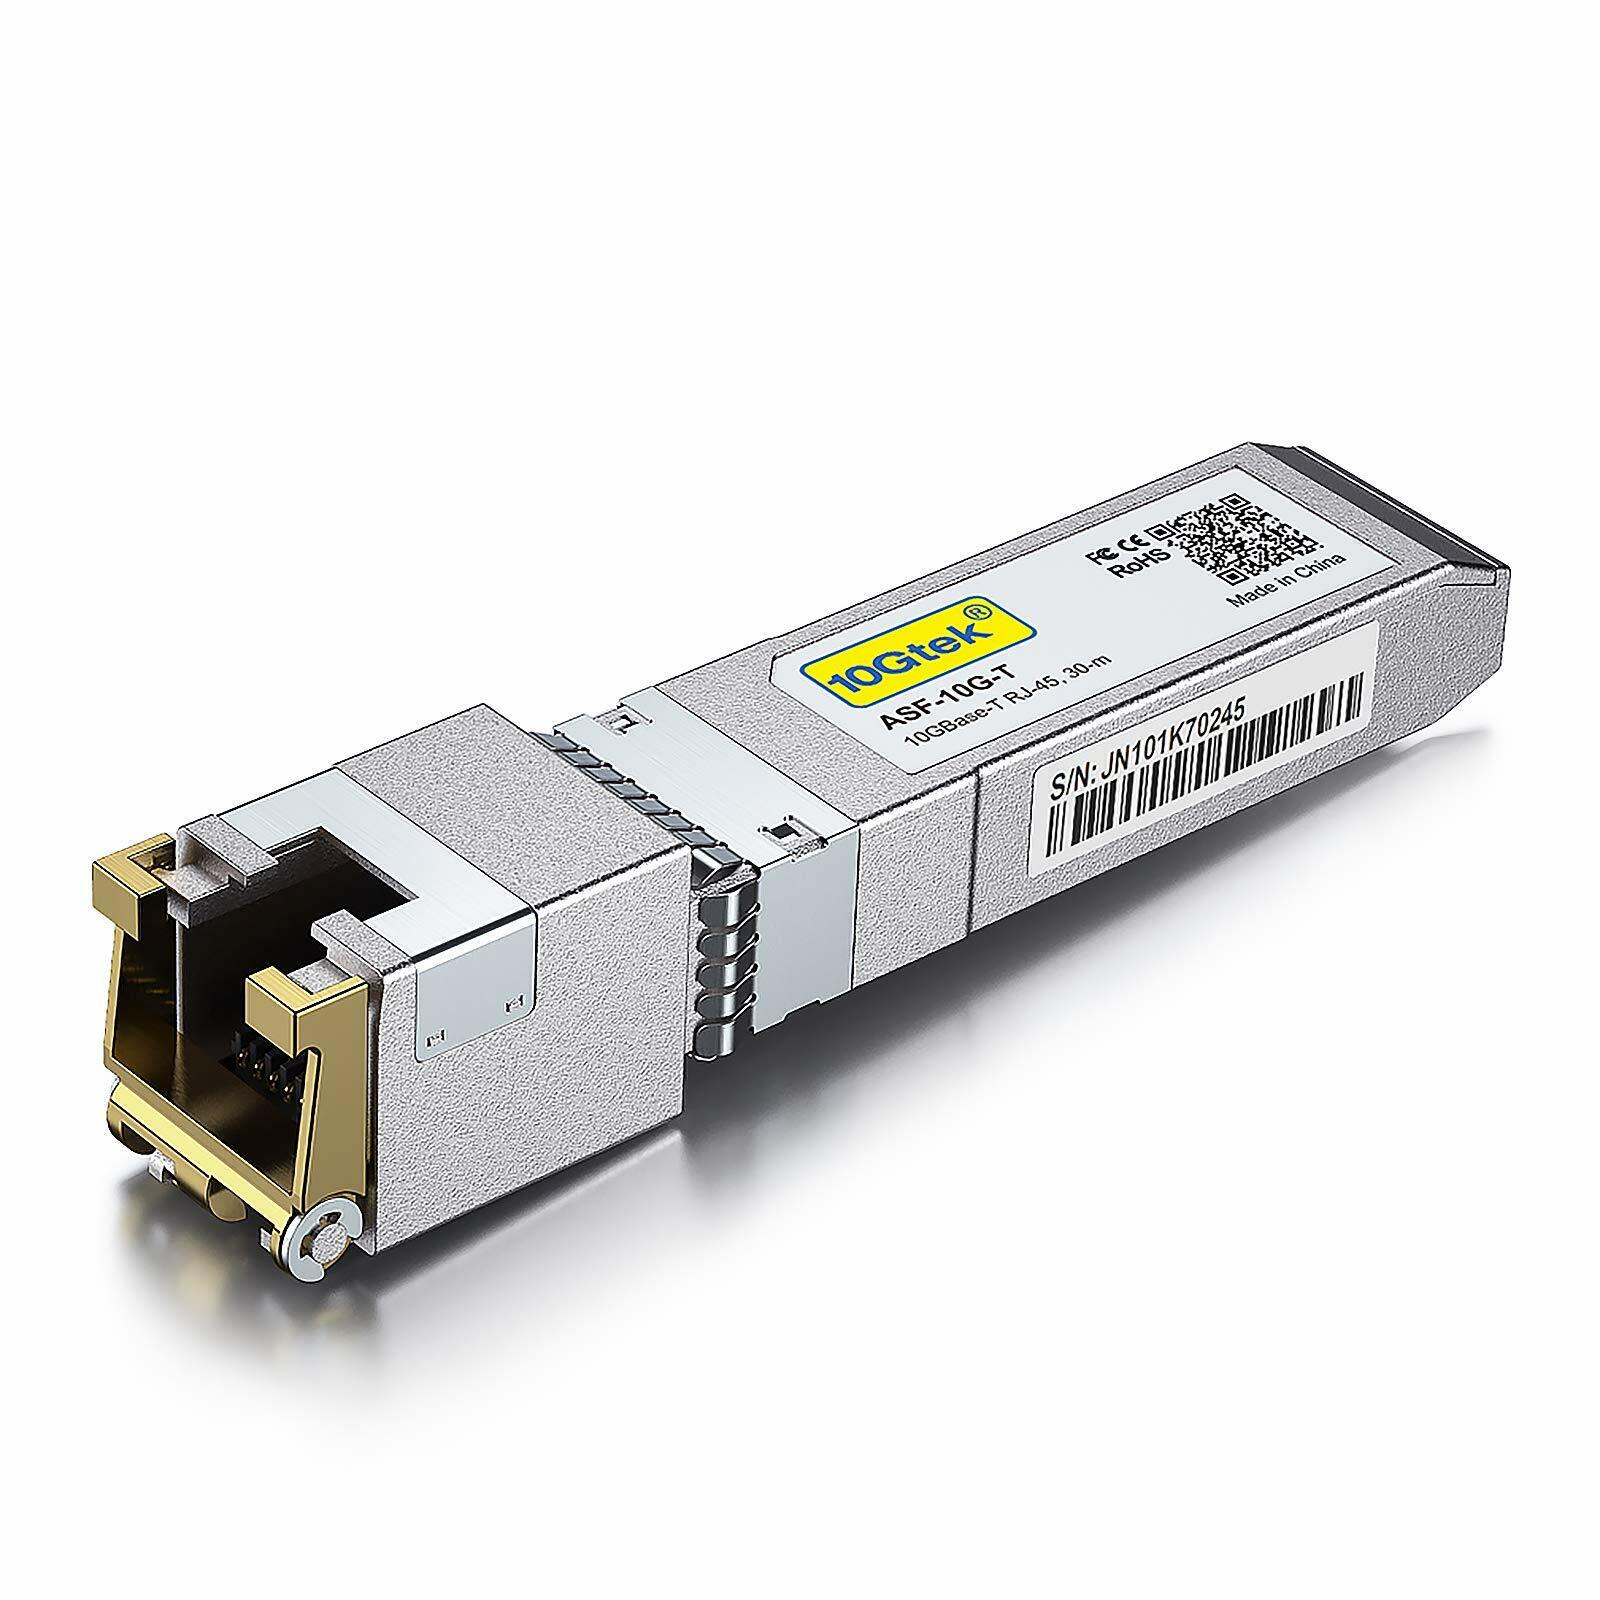 10GBase-T 10G SFP+ RJ45 Copper Transceiver Module For Cisco SFP-10G-T, Meraki